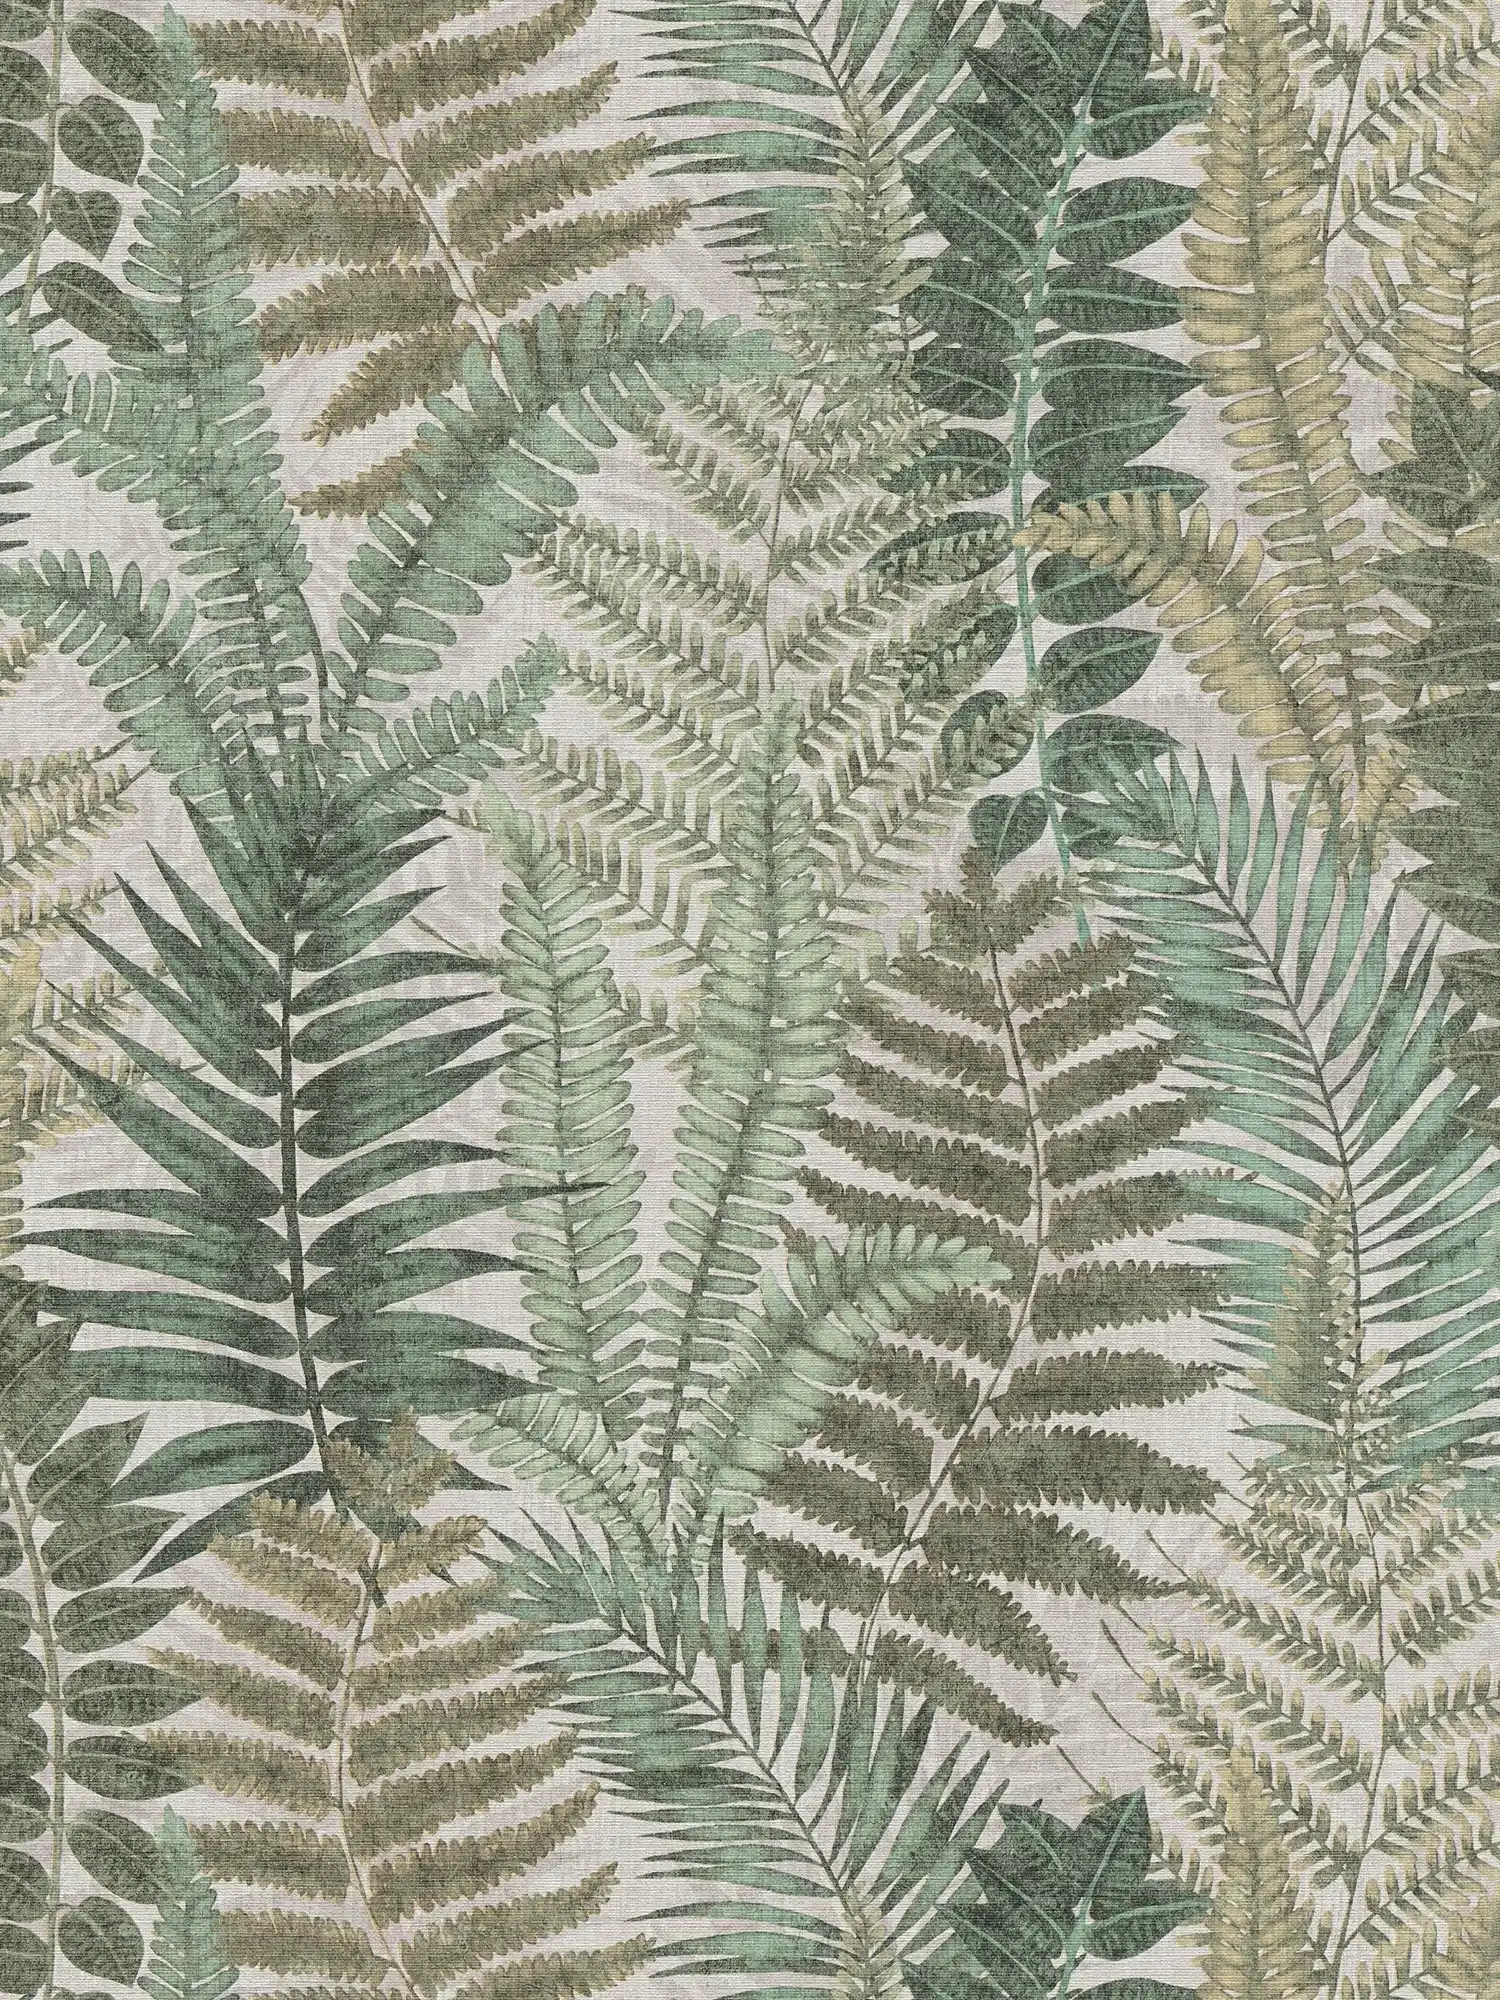 papel pintado floral con hojas de helecho textura ligera, mate - beige, verde, marrón
